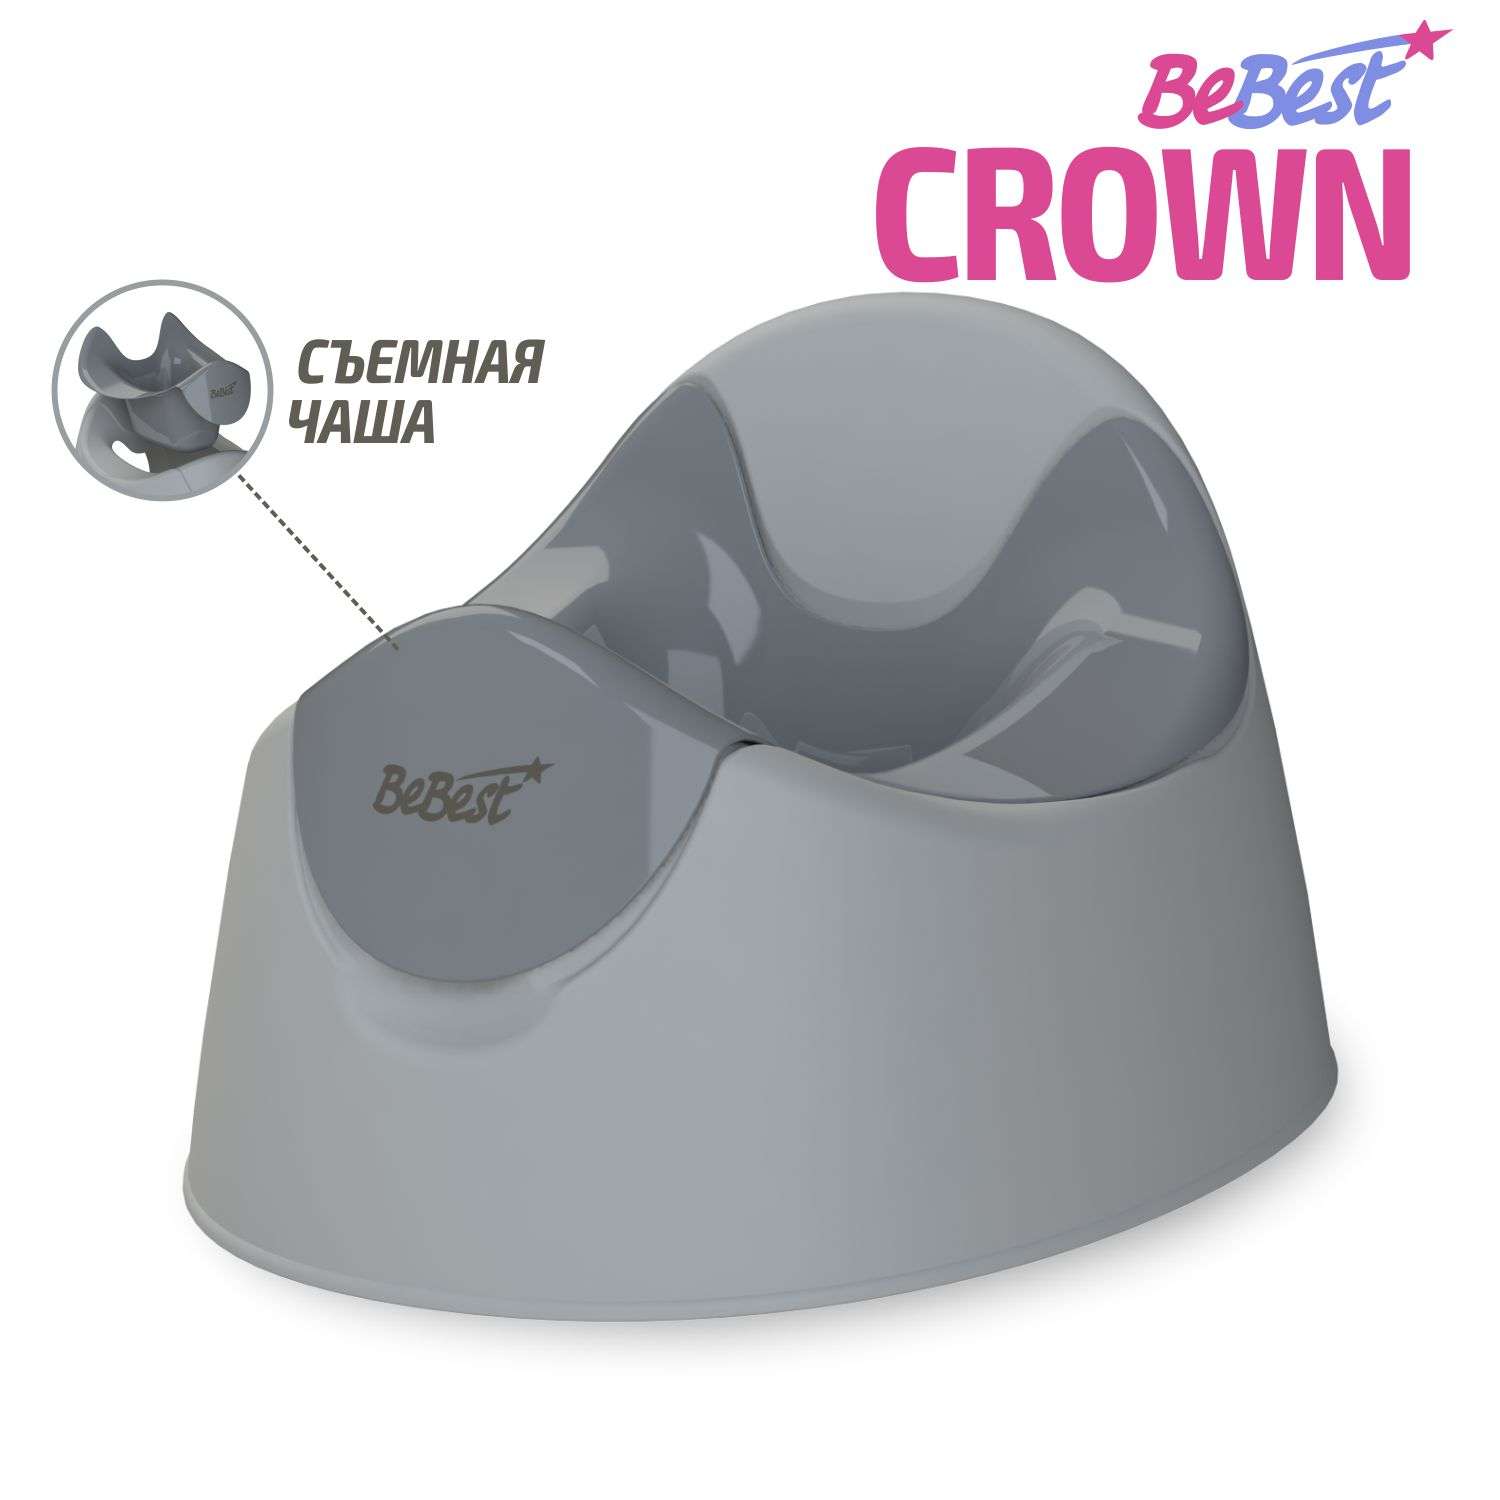 Горшок детский BeBest Crown серый - фото 1